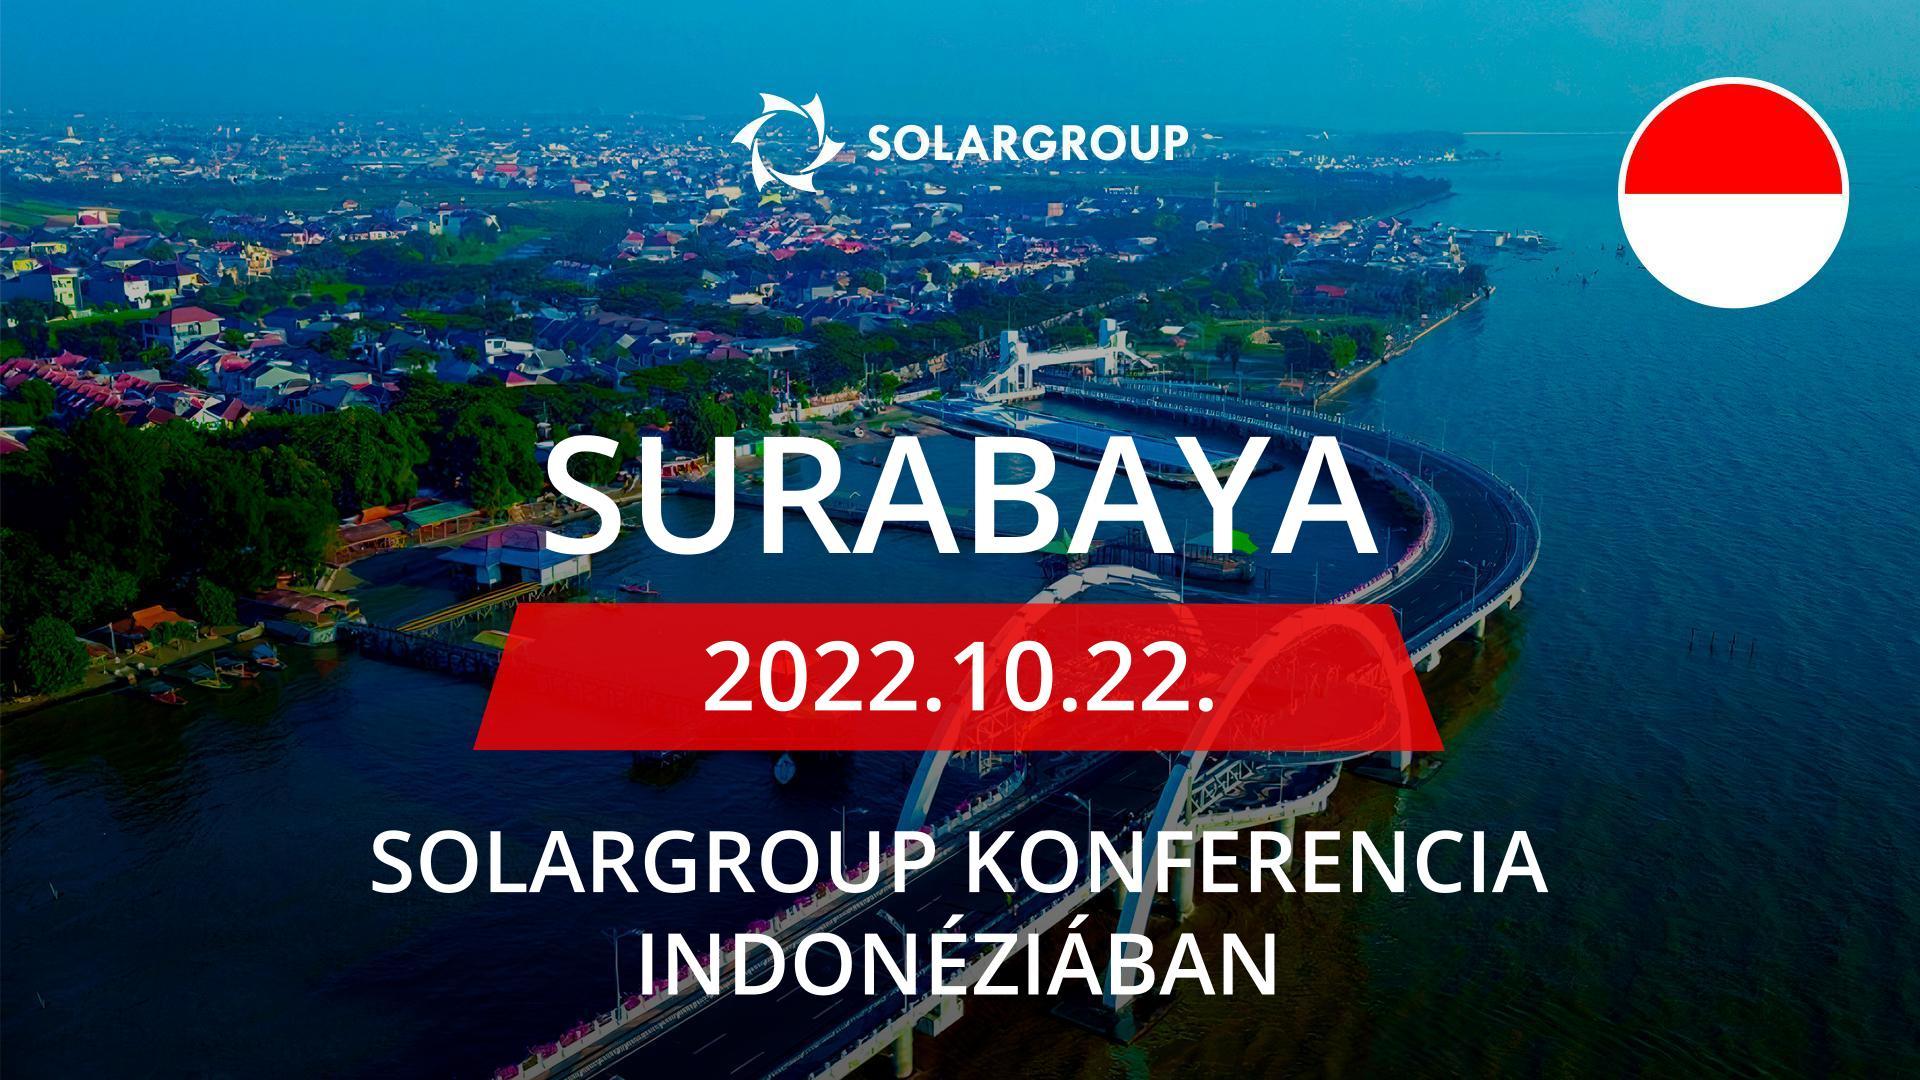 SOLARGROUP konferencia Indonéziában: október 22., Surabaya